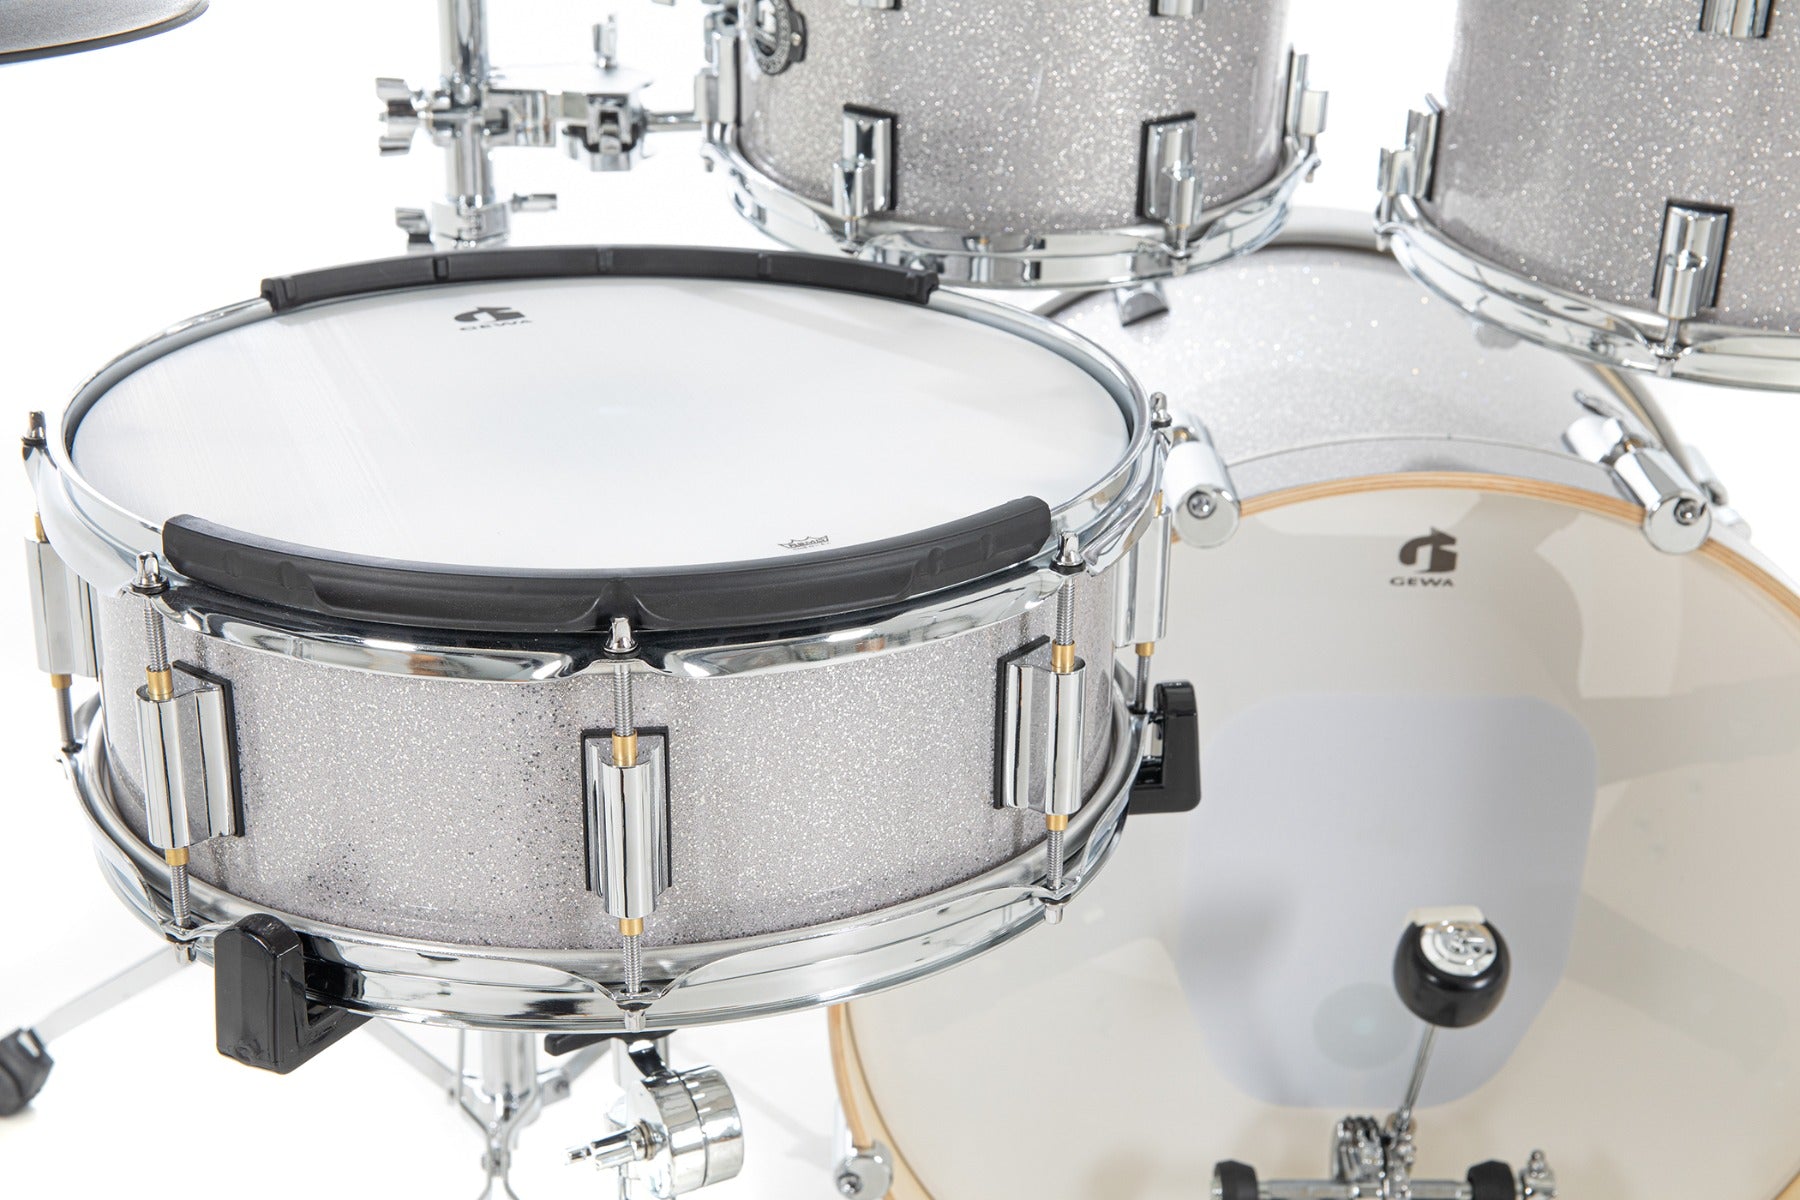 GEWA G9 Pro 5 SE 6-Piece Electronic Drum Set - Silver Sparkle, View 3